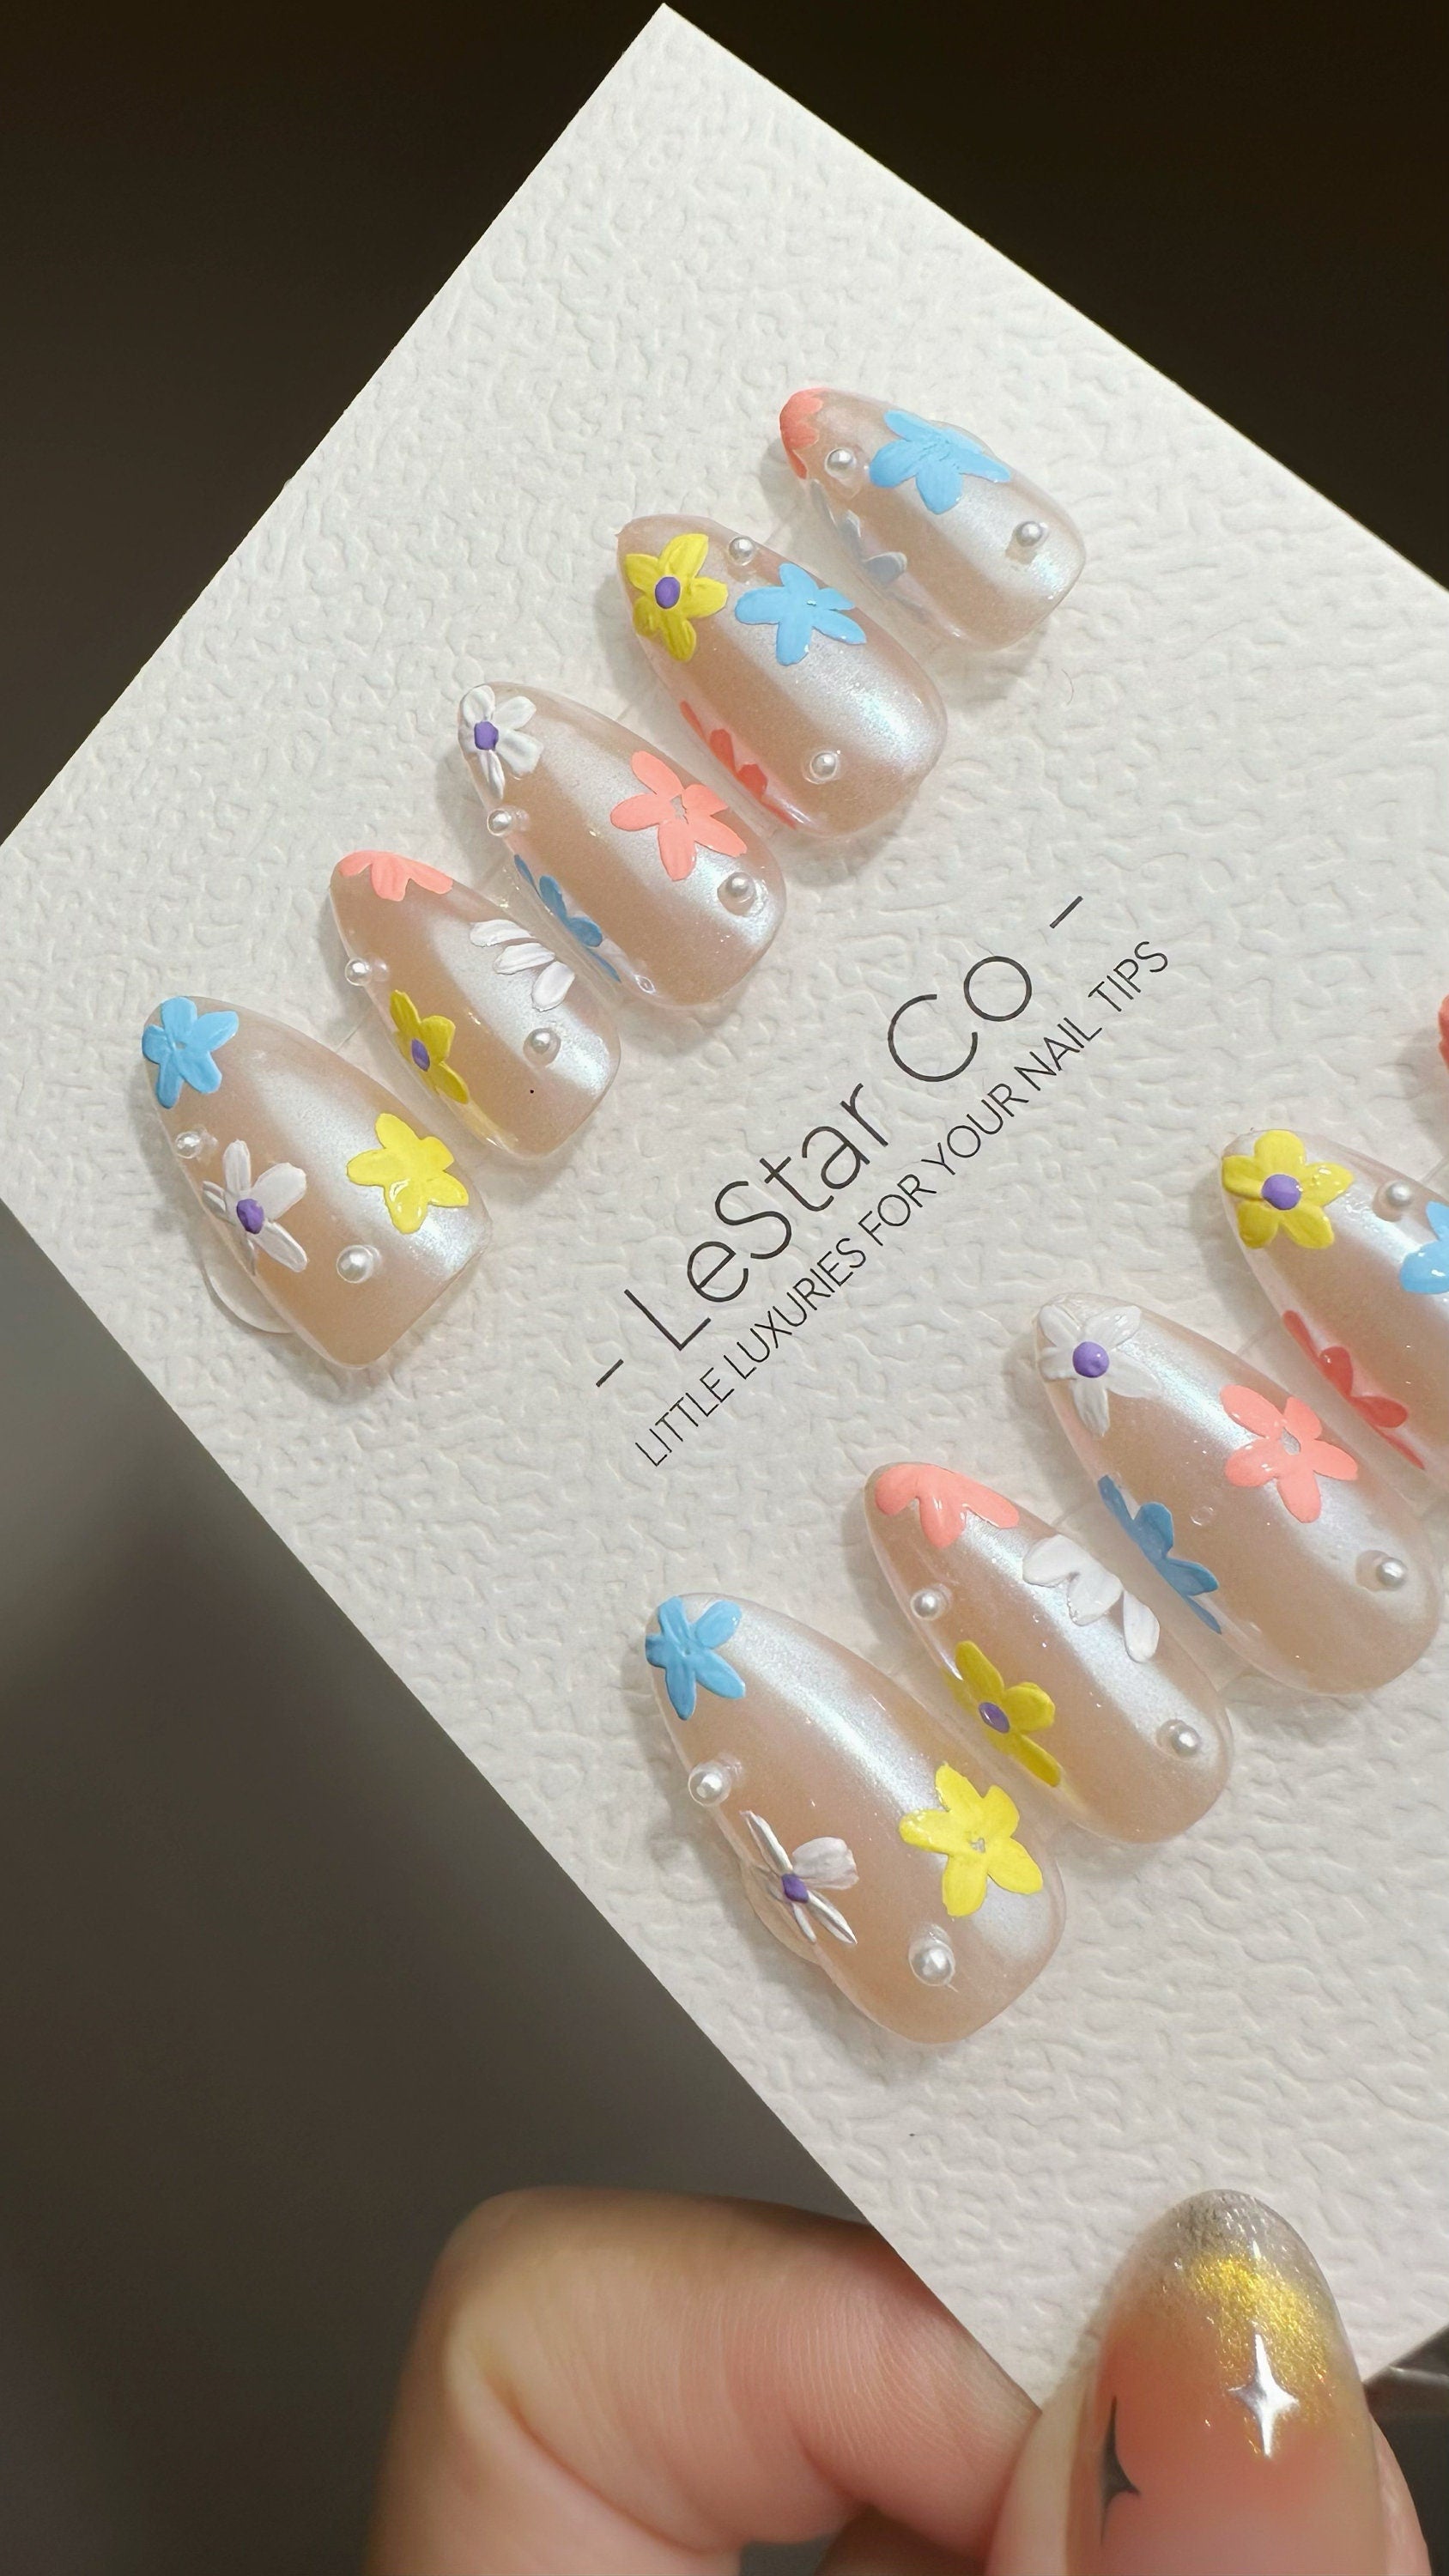 Reusable Flower Farm | Premium Press on Nails Gel | Fake Nails | Cute Fun Colorful Gel Nail Artist faux nails ML607